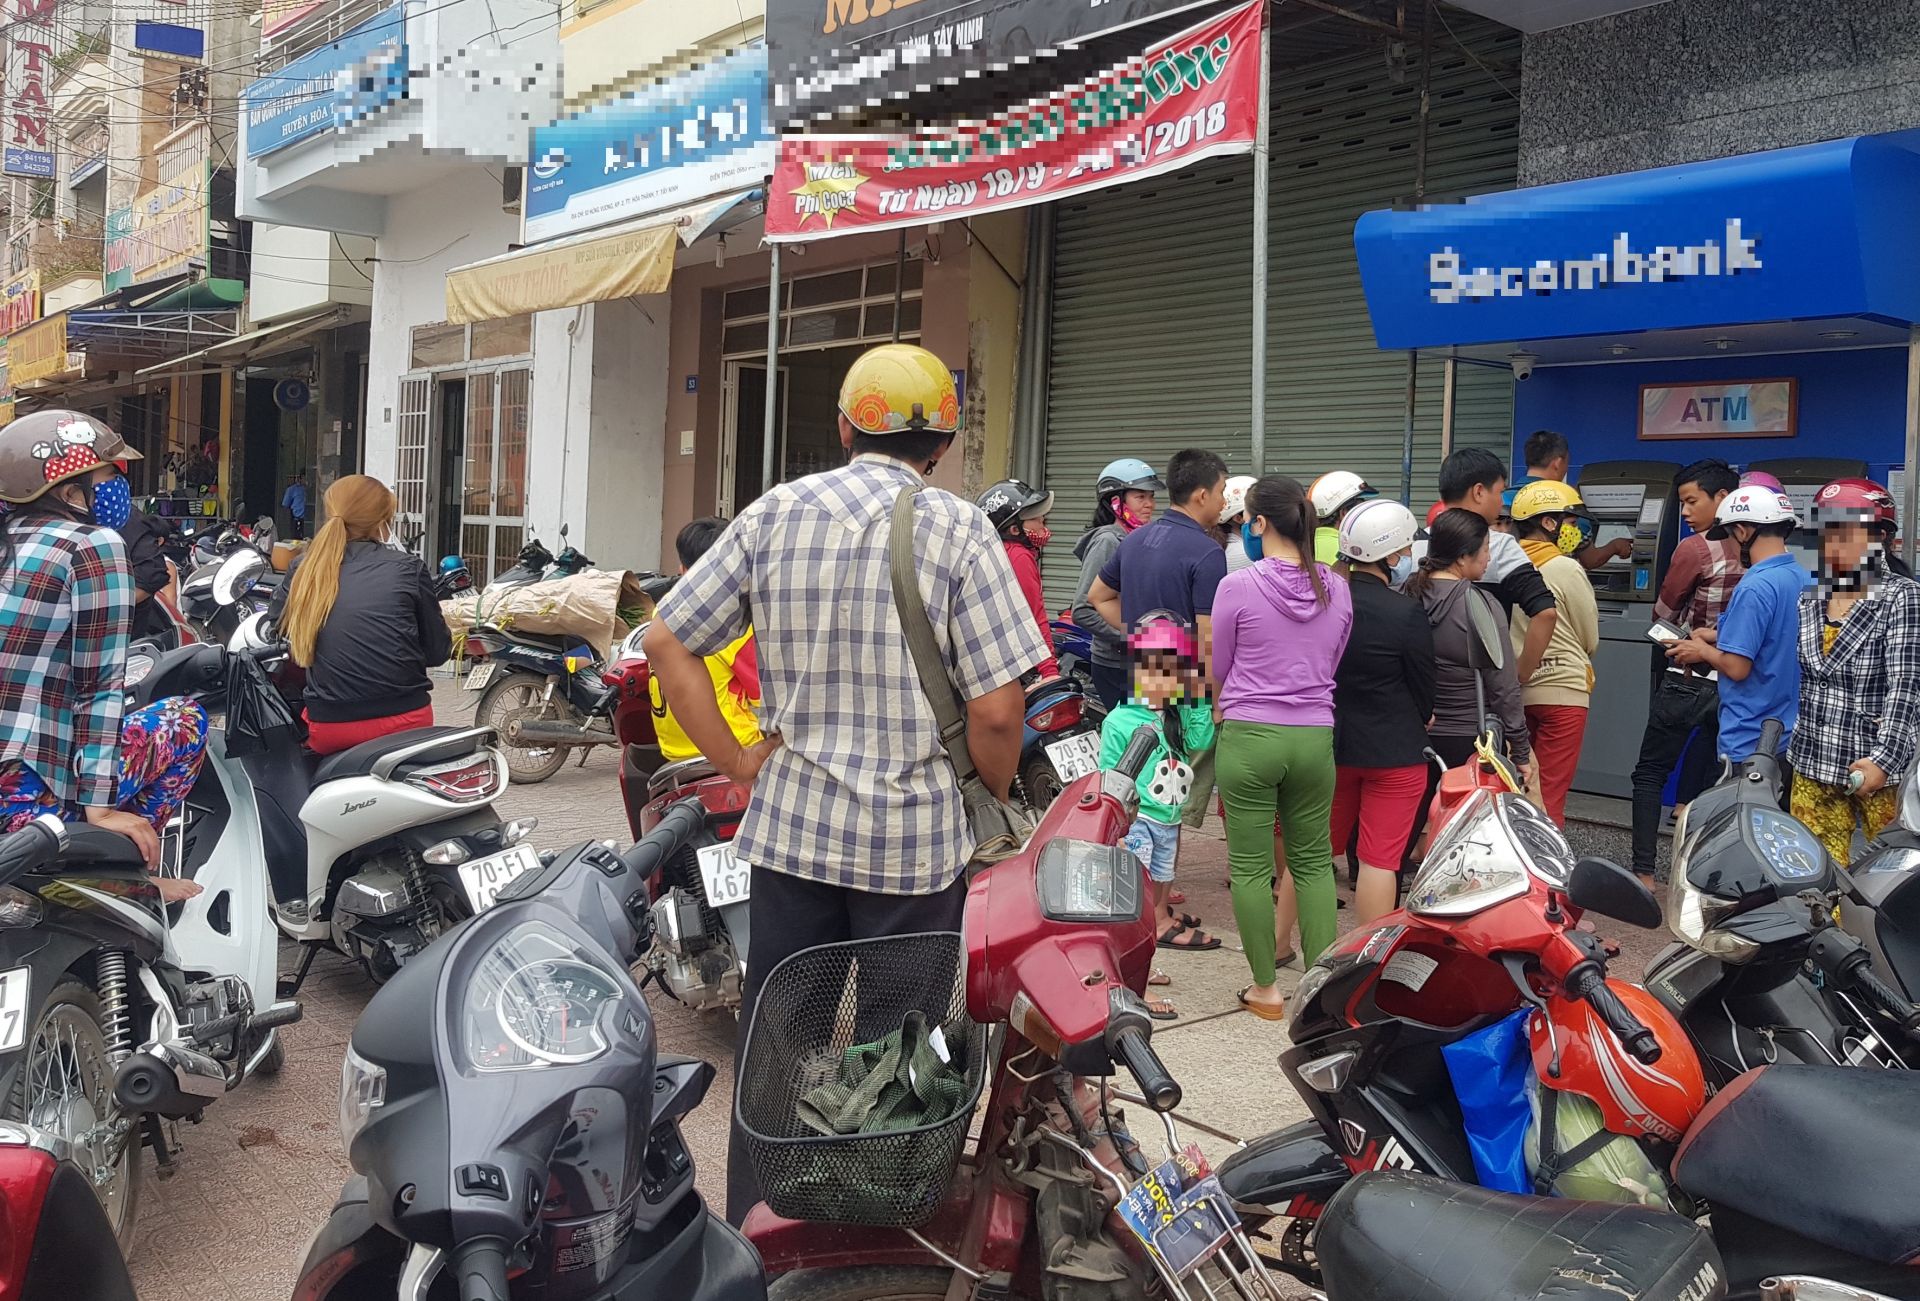 Điểm báo in Tây Ninh ngày 12.04.2019